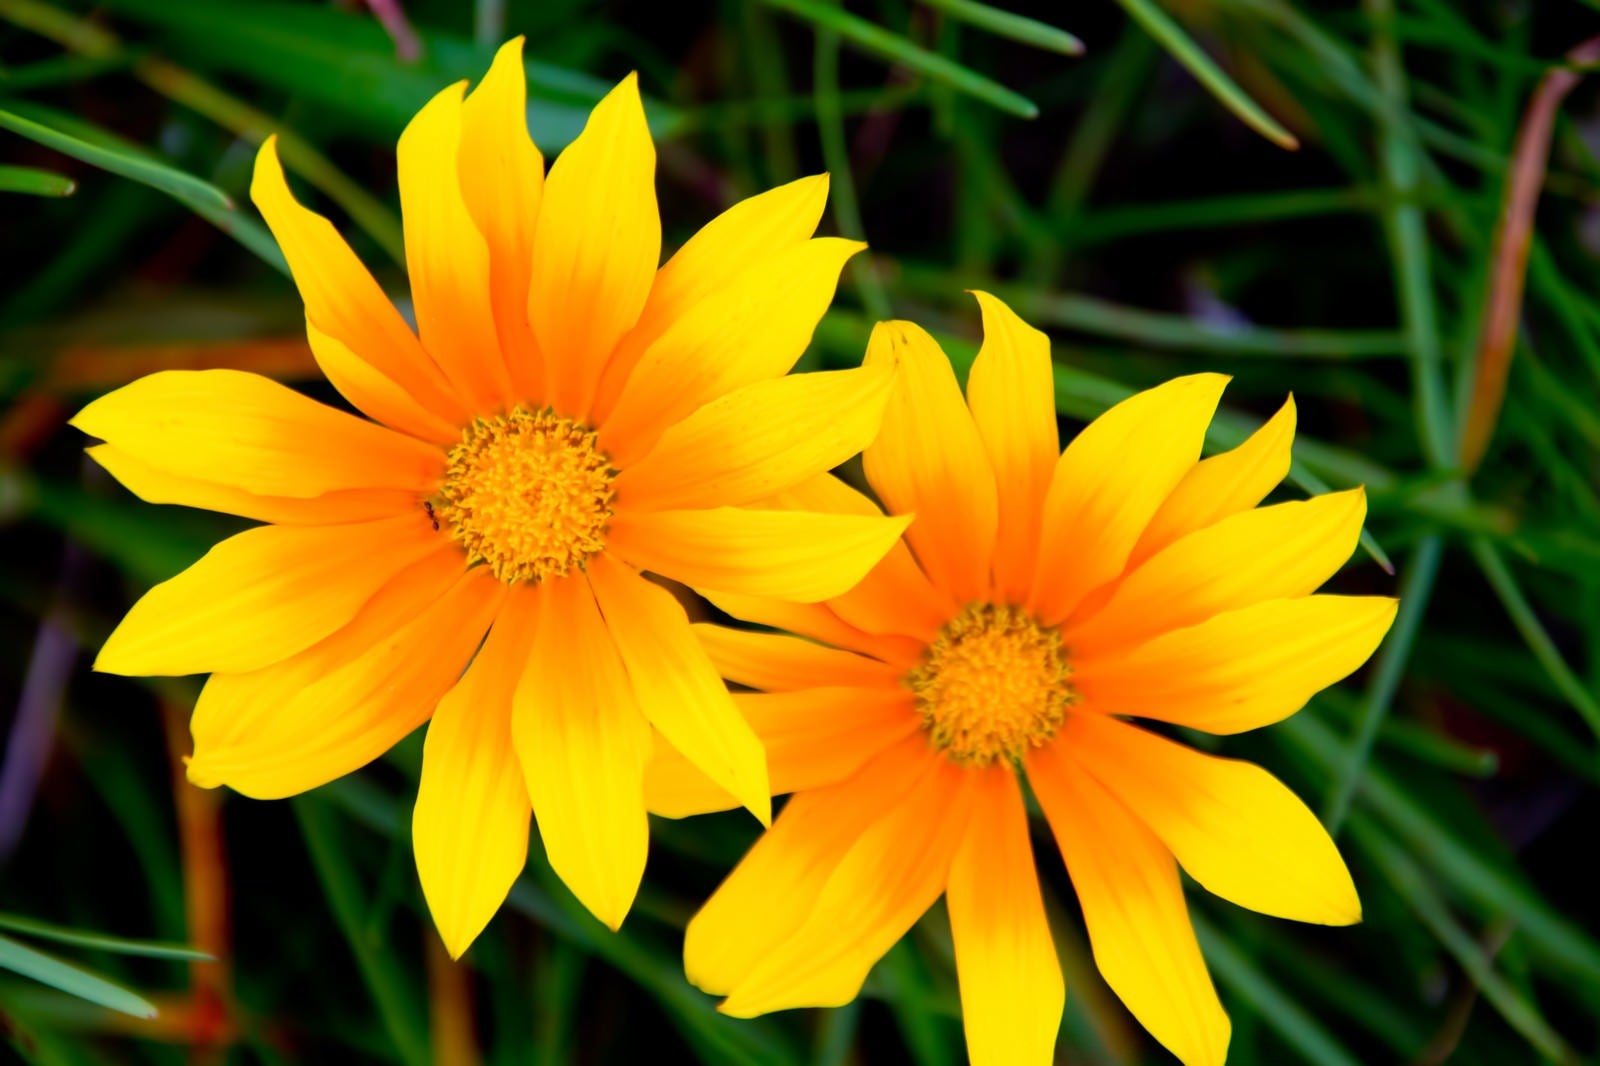 「太陽の黄色い花」の写真